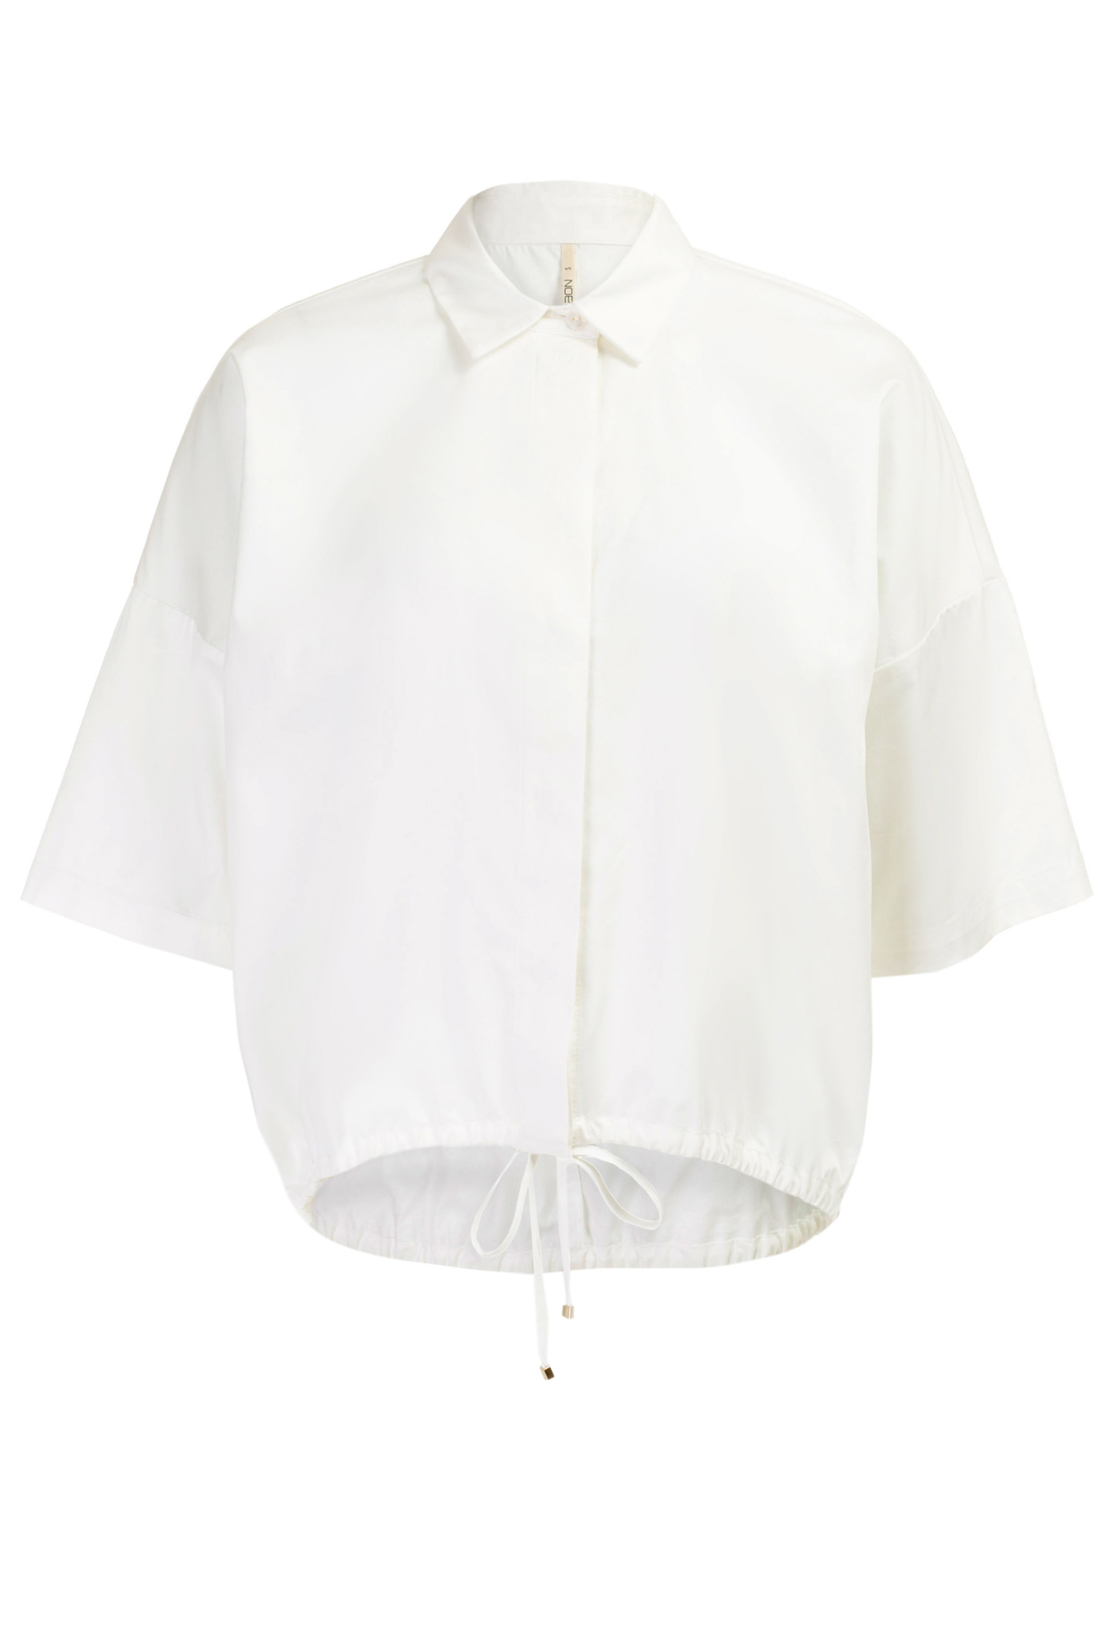 Блузка с кулиской (арт. baon B177034), размер M, цвет белый Блузка с кулиской (арт. baon B177034) - фото 4